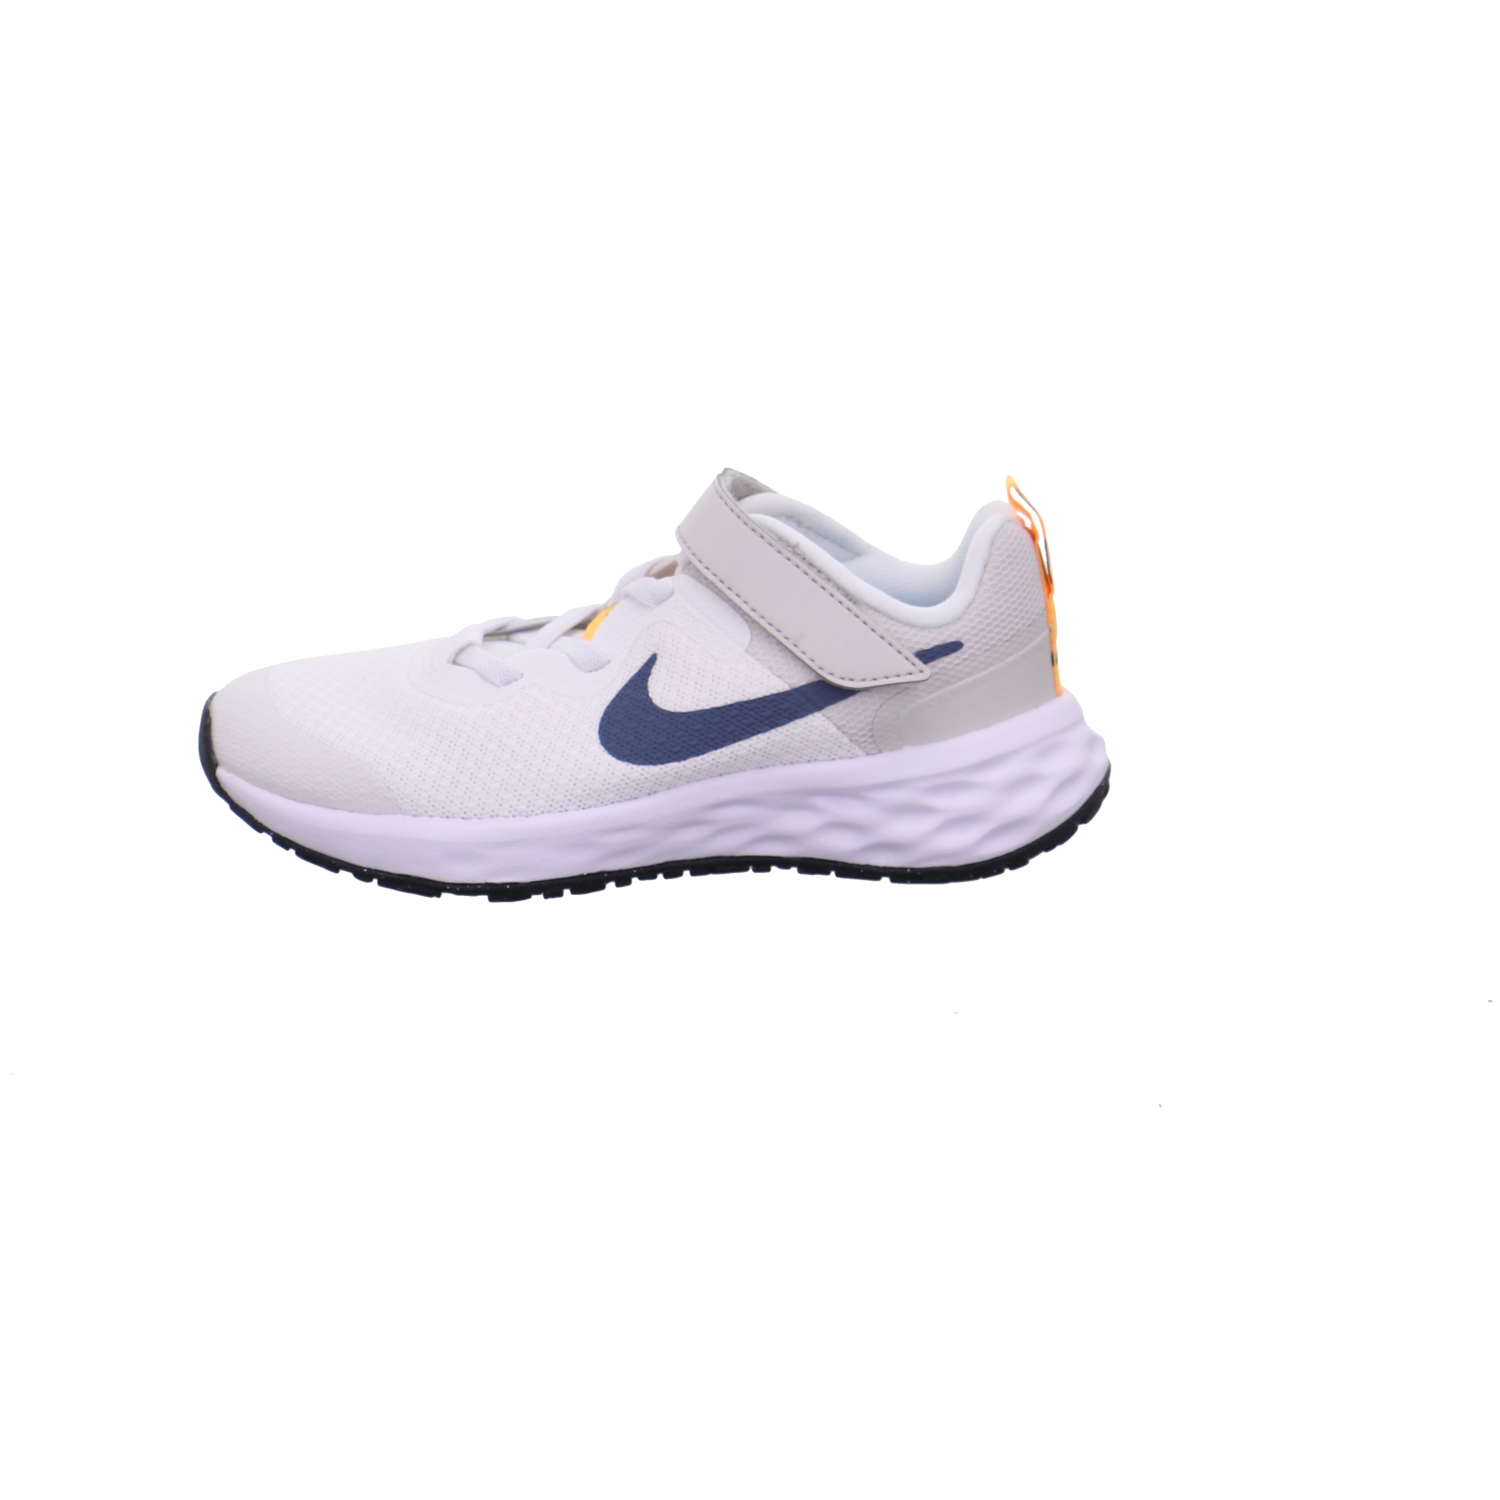 Nike Halbschuhe weiß kombi Bild1